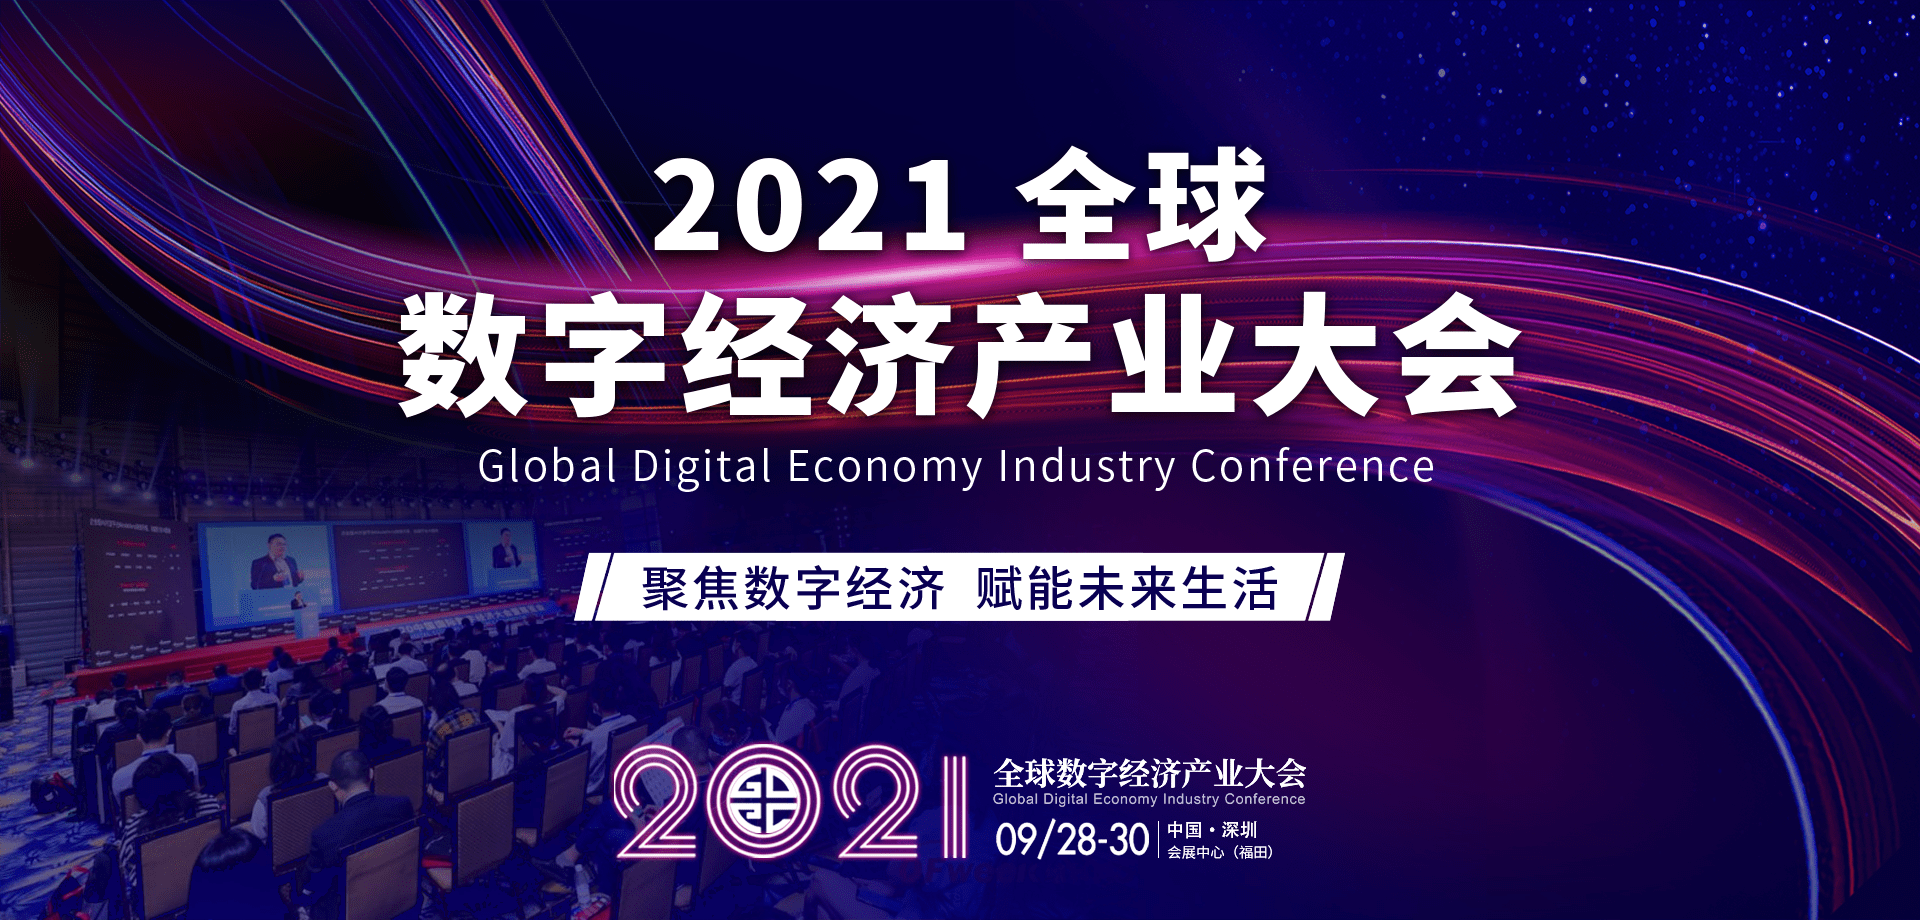 聚焦数字经济2021全球数字经济产业大会将于9月2830日在深圳举行